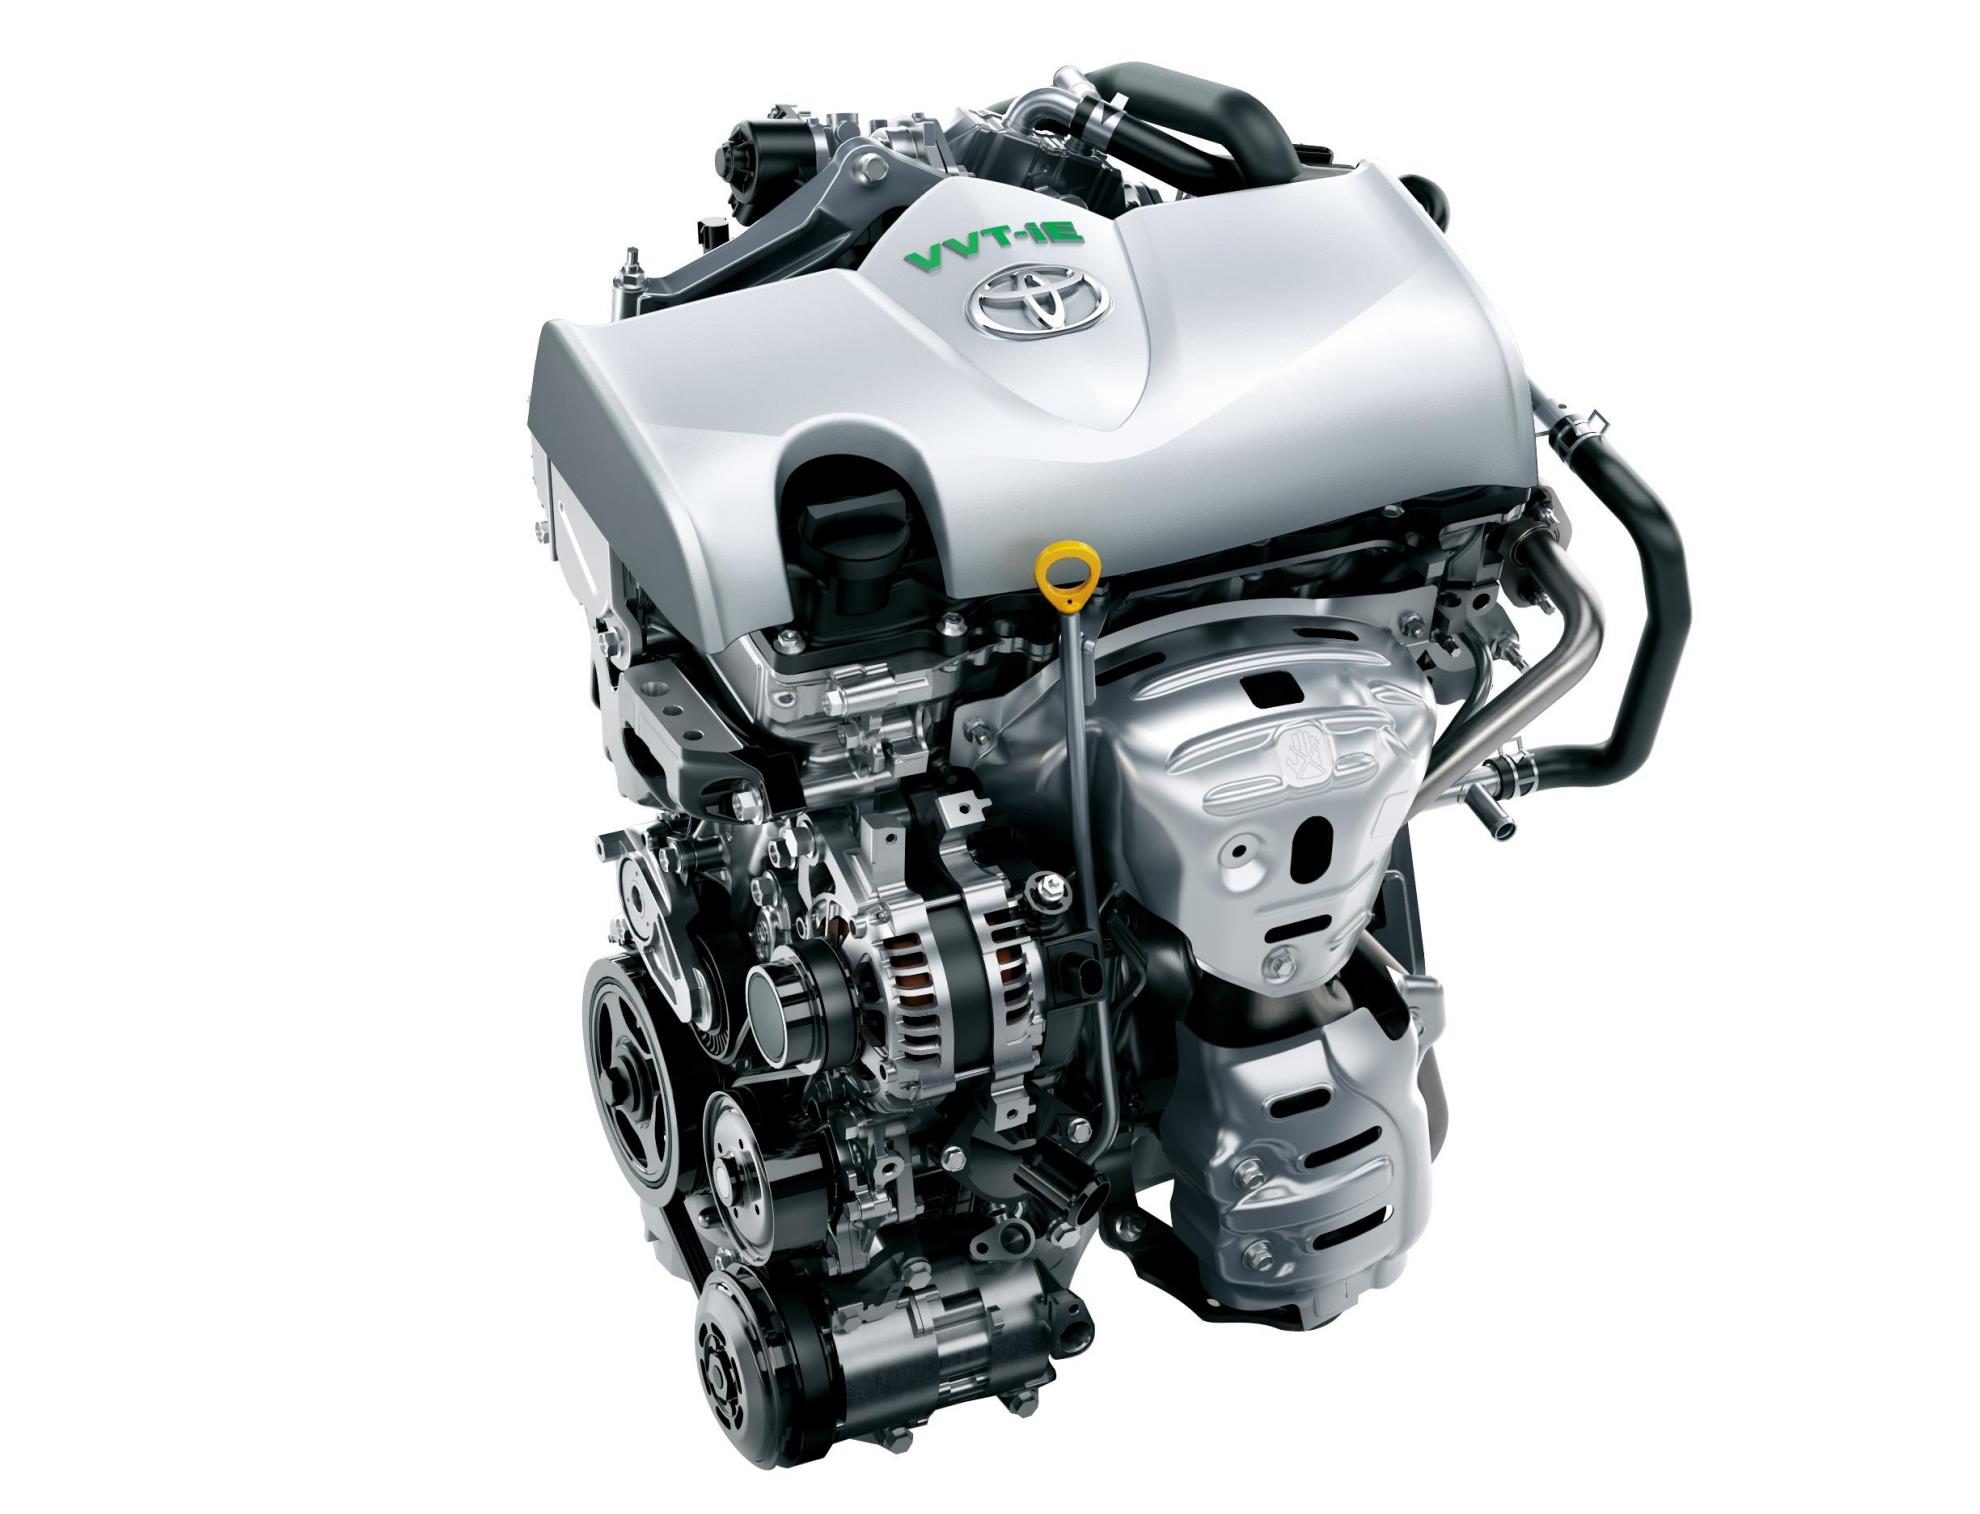 丰田12t发动机:为何它失去了市场的青睐?答案扎心